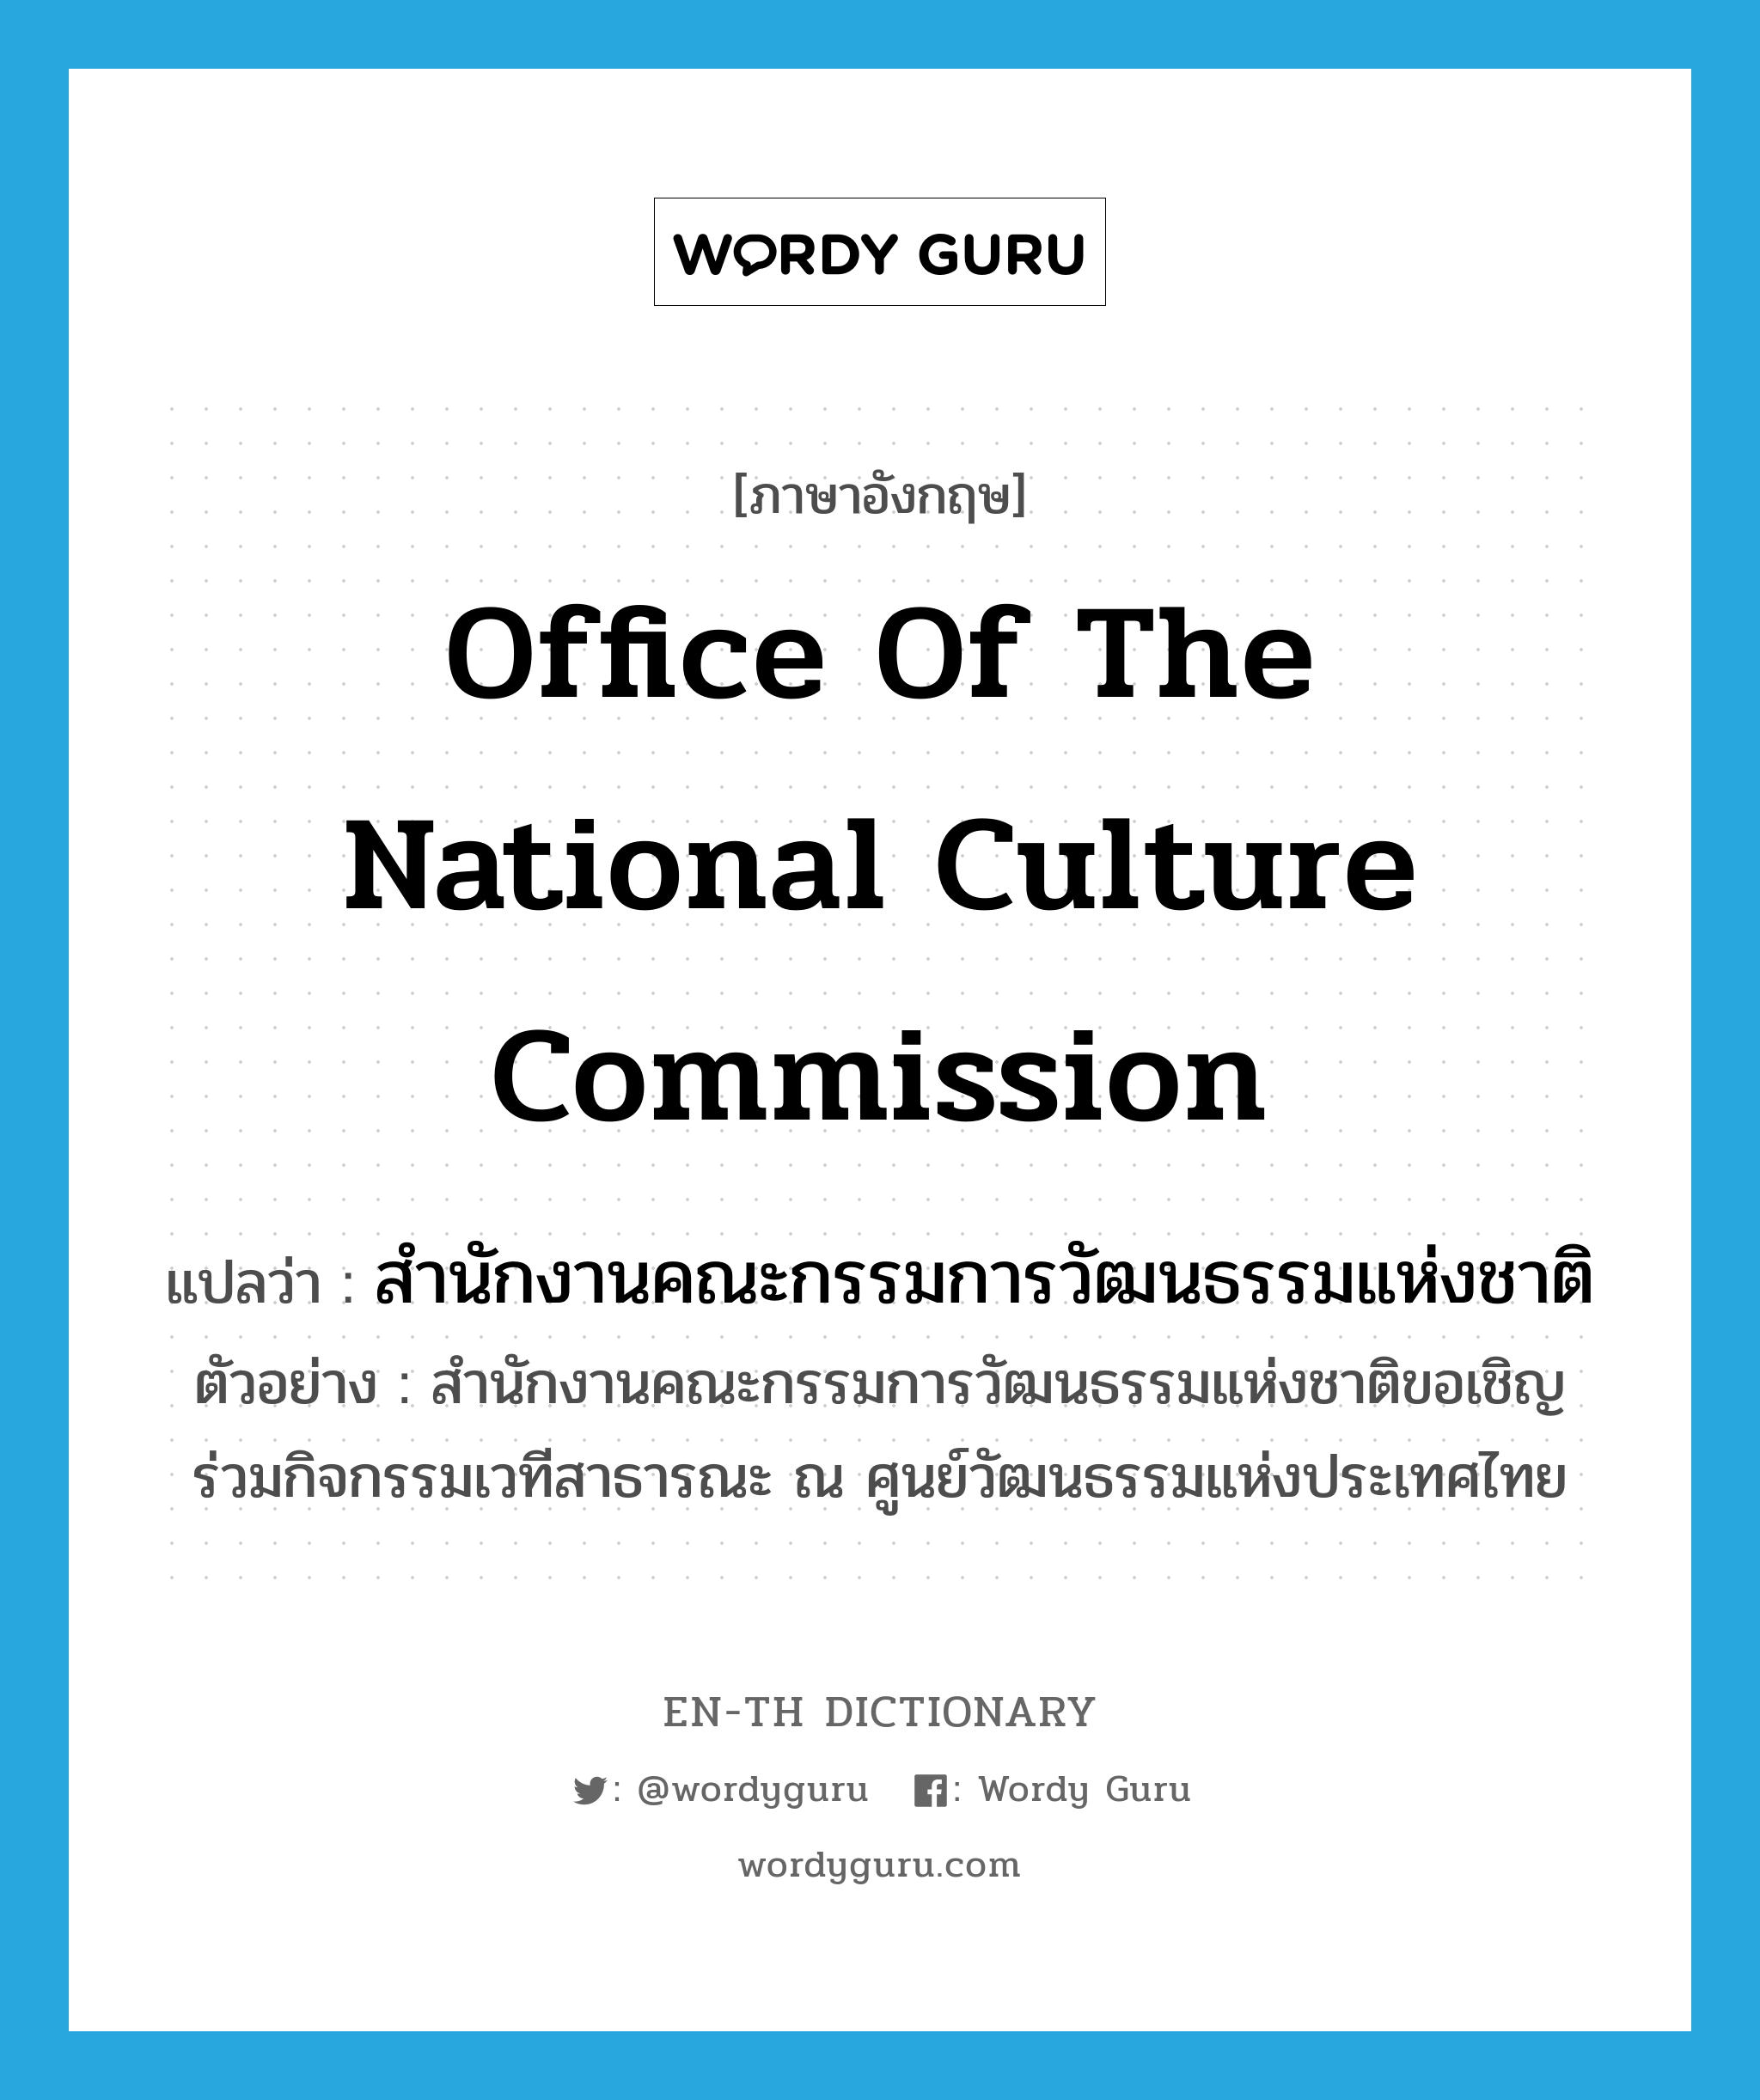 Office of the National Culture Commission แปลว่า?, คำศัพท์ภาษาอังกฤษ Office of the National Culture Commission แปลว่า สำนักงานคณะกรรมการวัฒนธรรมแห่งชาติ ประเภท N ตัวอย่าง สำนักงานคณะกรรมการวัฒนธรรมแห่งชาติขอเชิญร่วมกิจกรรมเวทีสาธารณะ ณ ศูนย์วัฒนธรรมแห่งประเทศไทย หมวด N